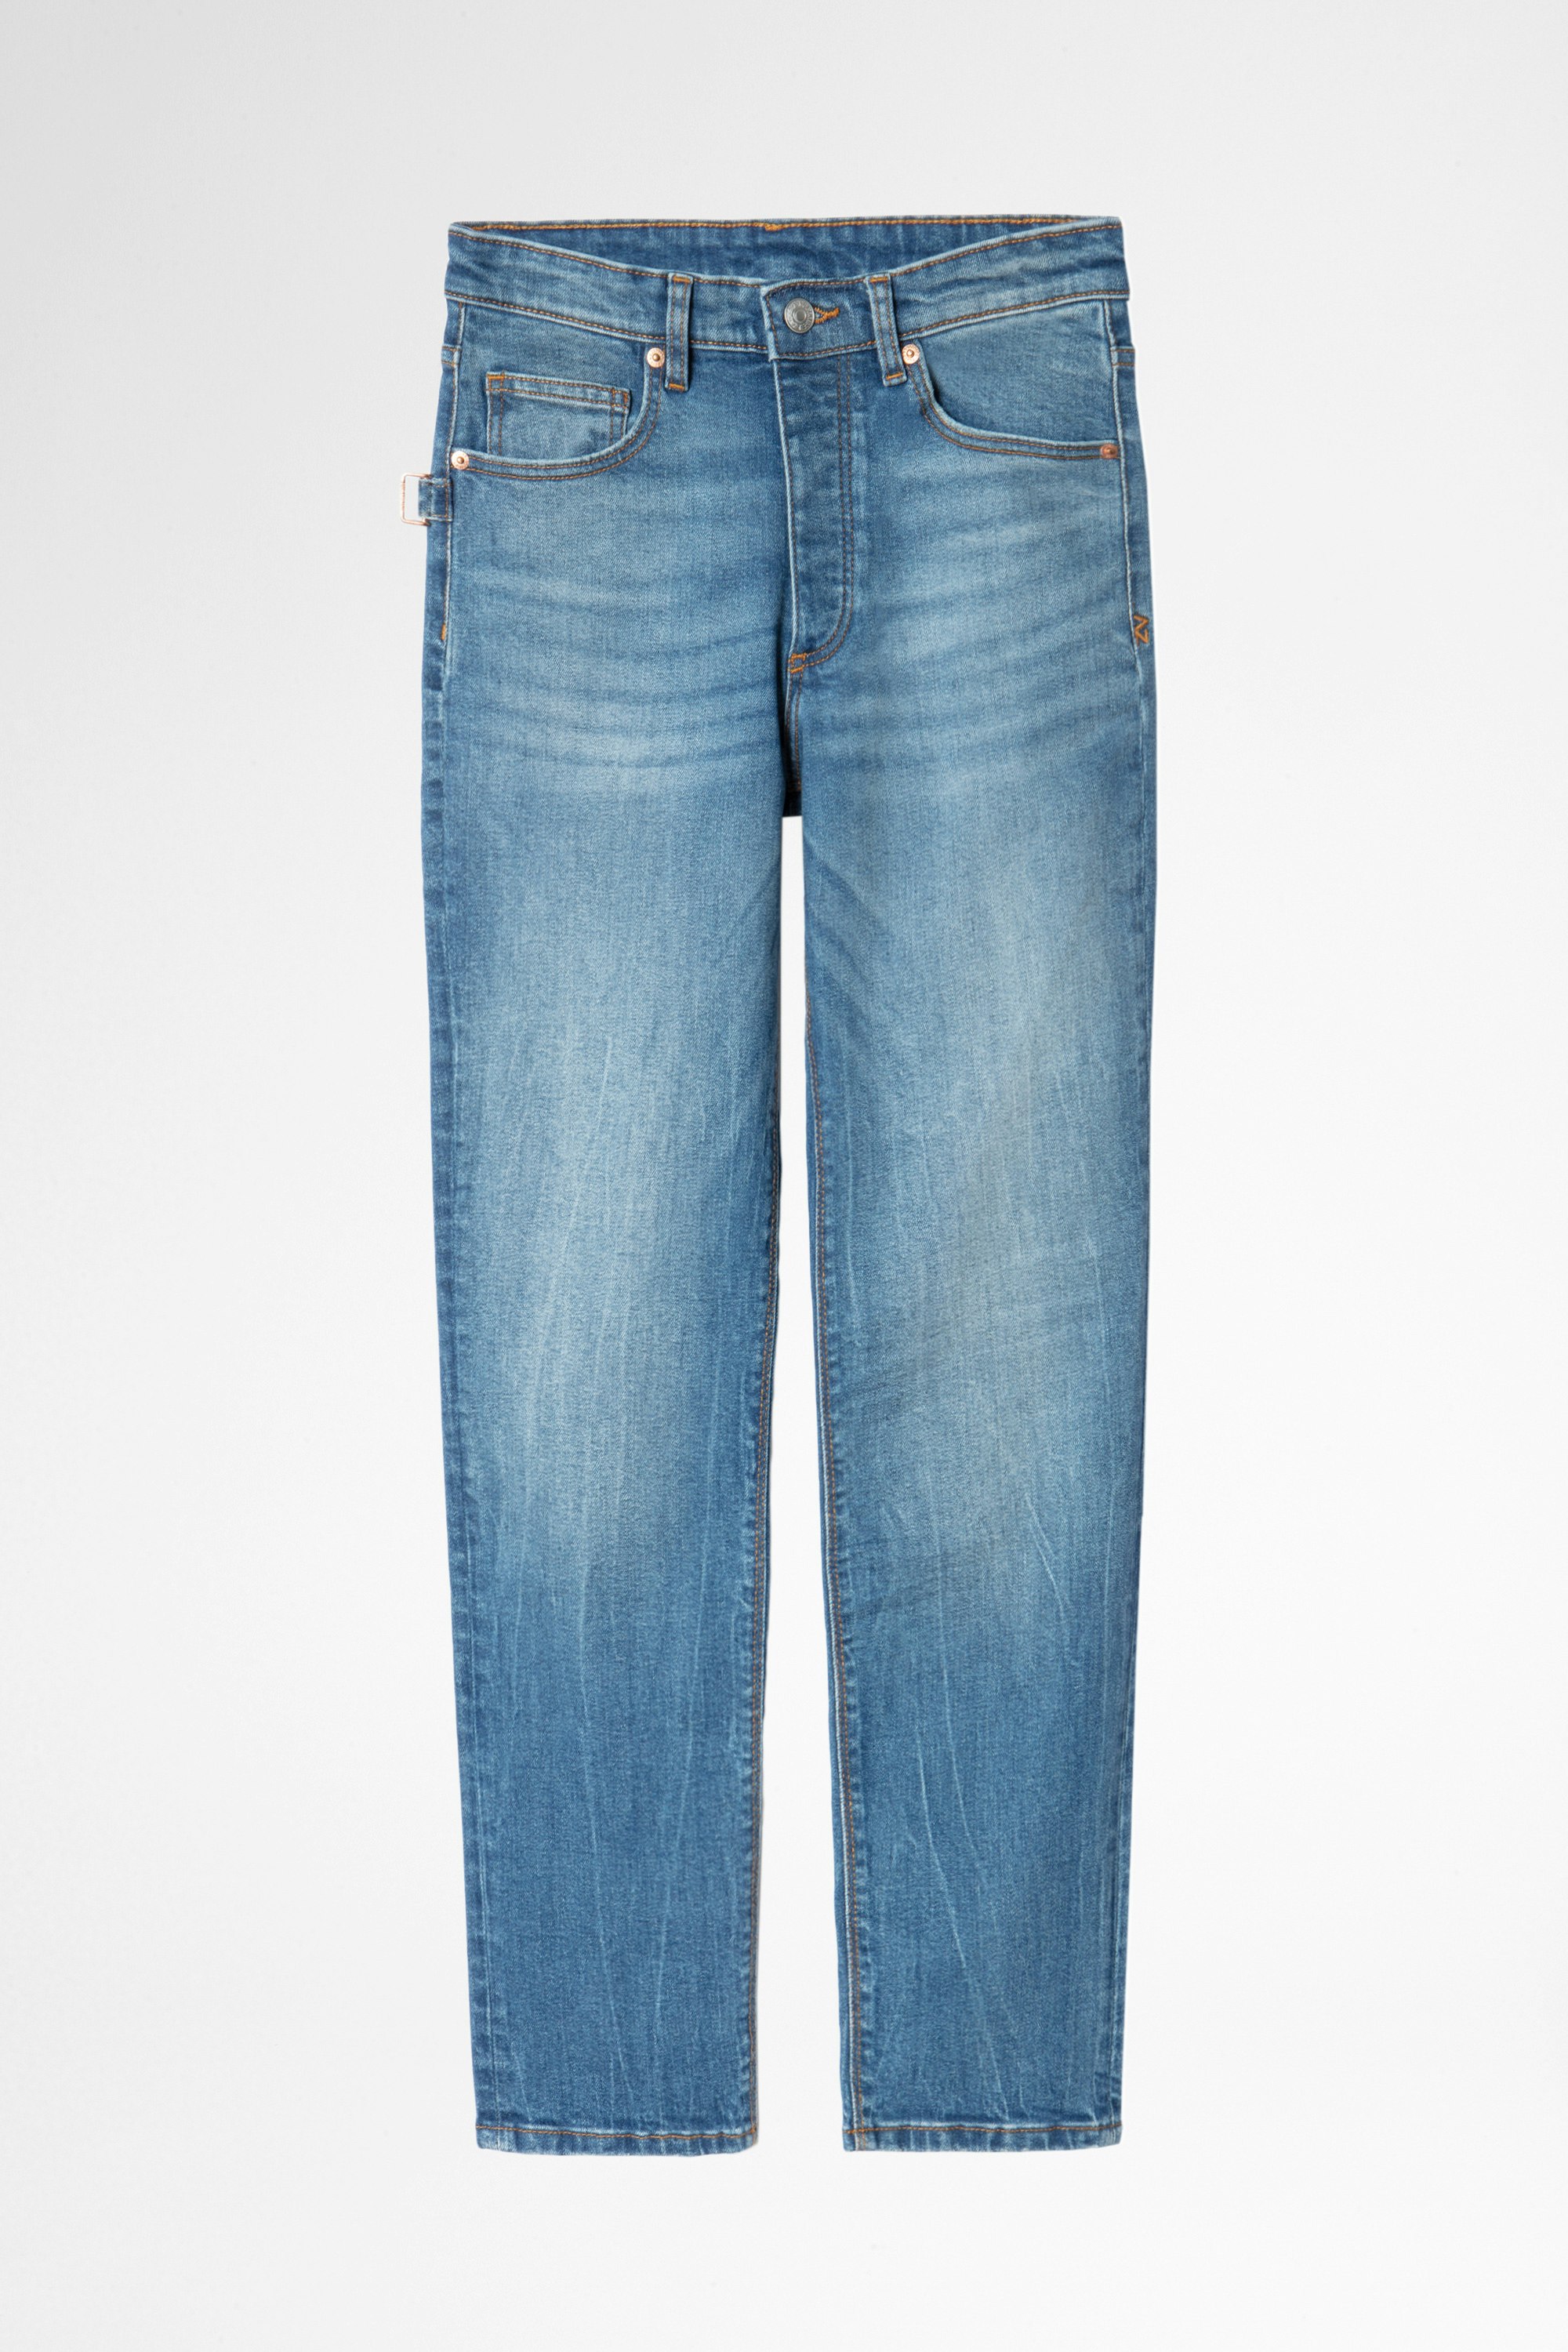 Jeans Mamma Light Blaue Damen-Jeans aus Baumwoll-Denim in Washed-Optik